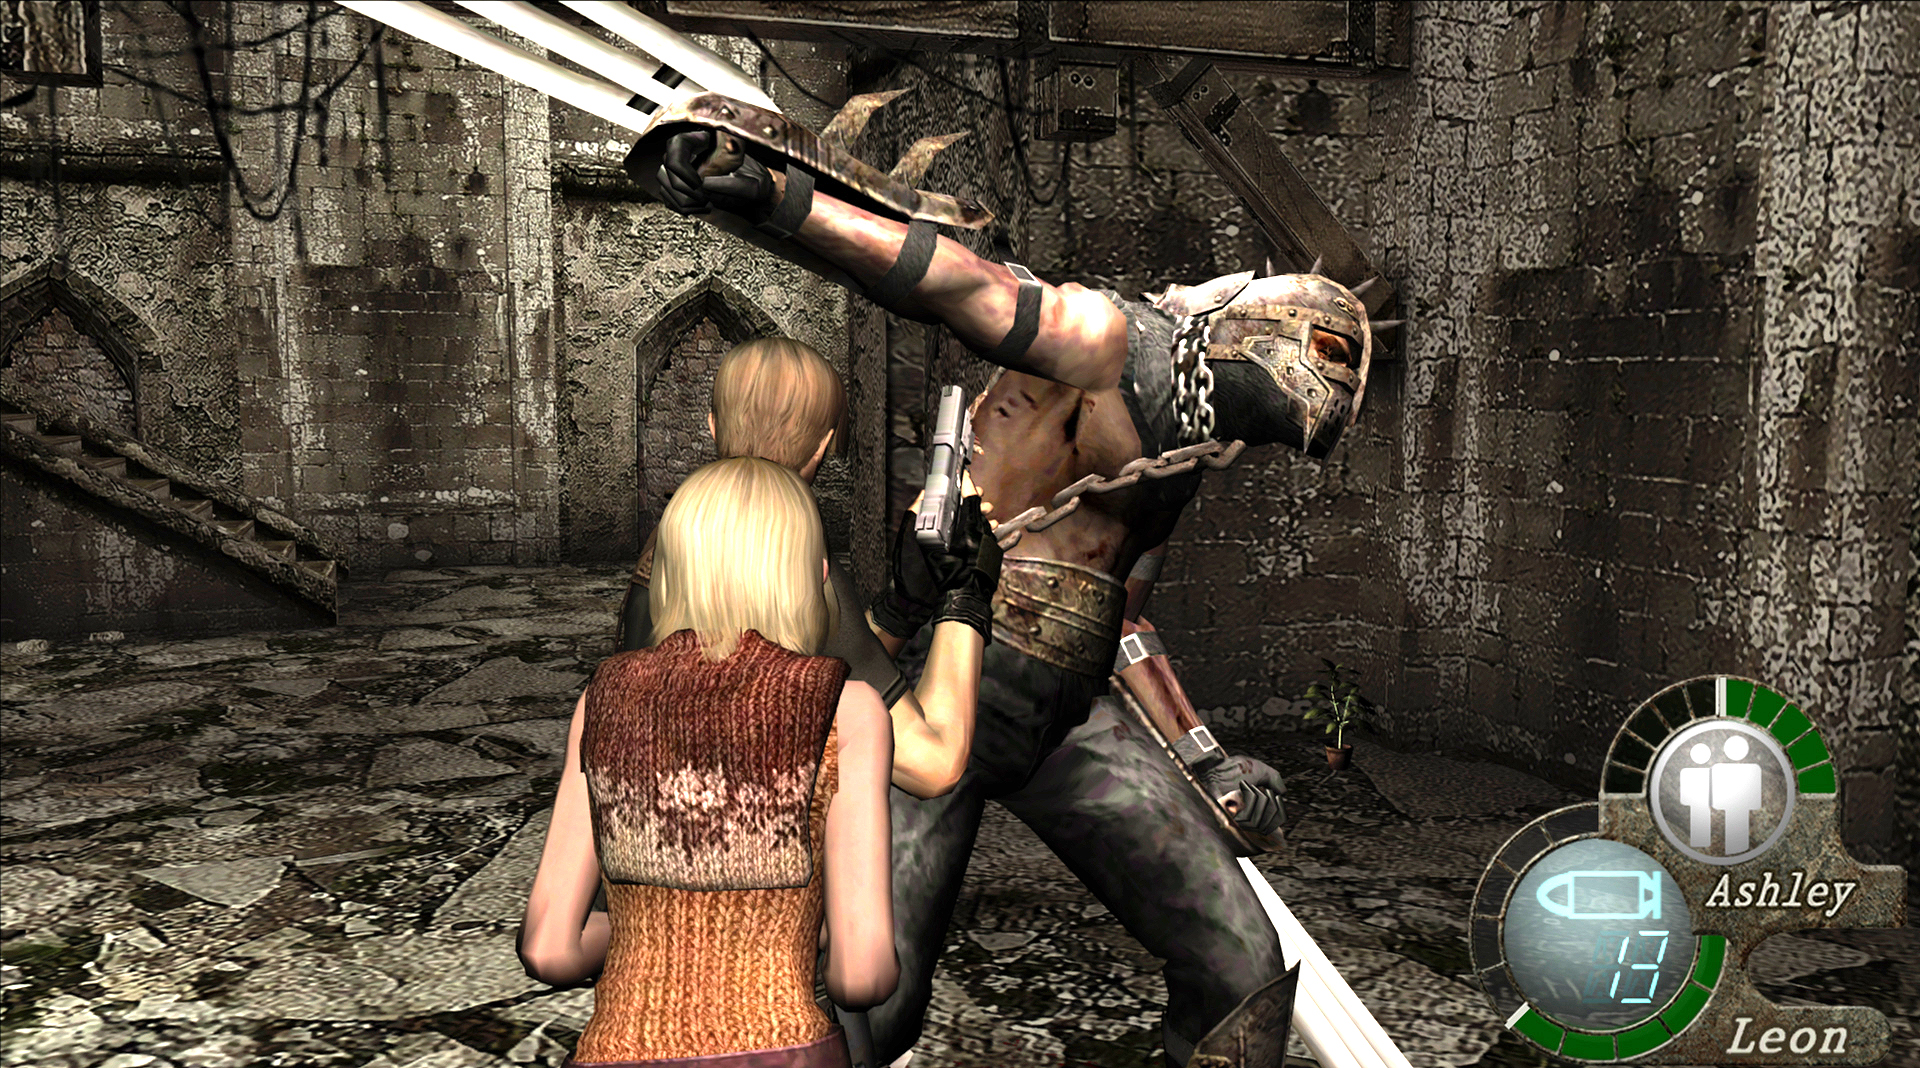 生化危机4 终极高清版/Resident Evil 4 Ultimate HD Edition_图片3